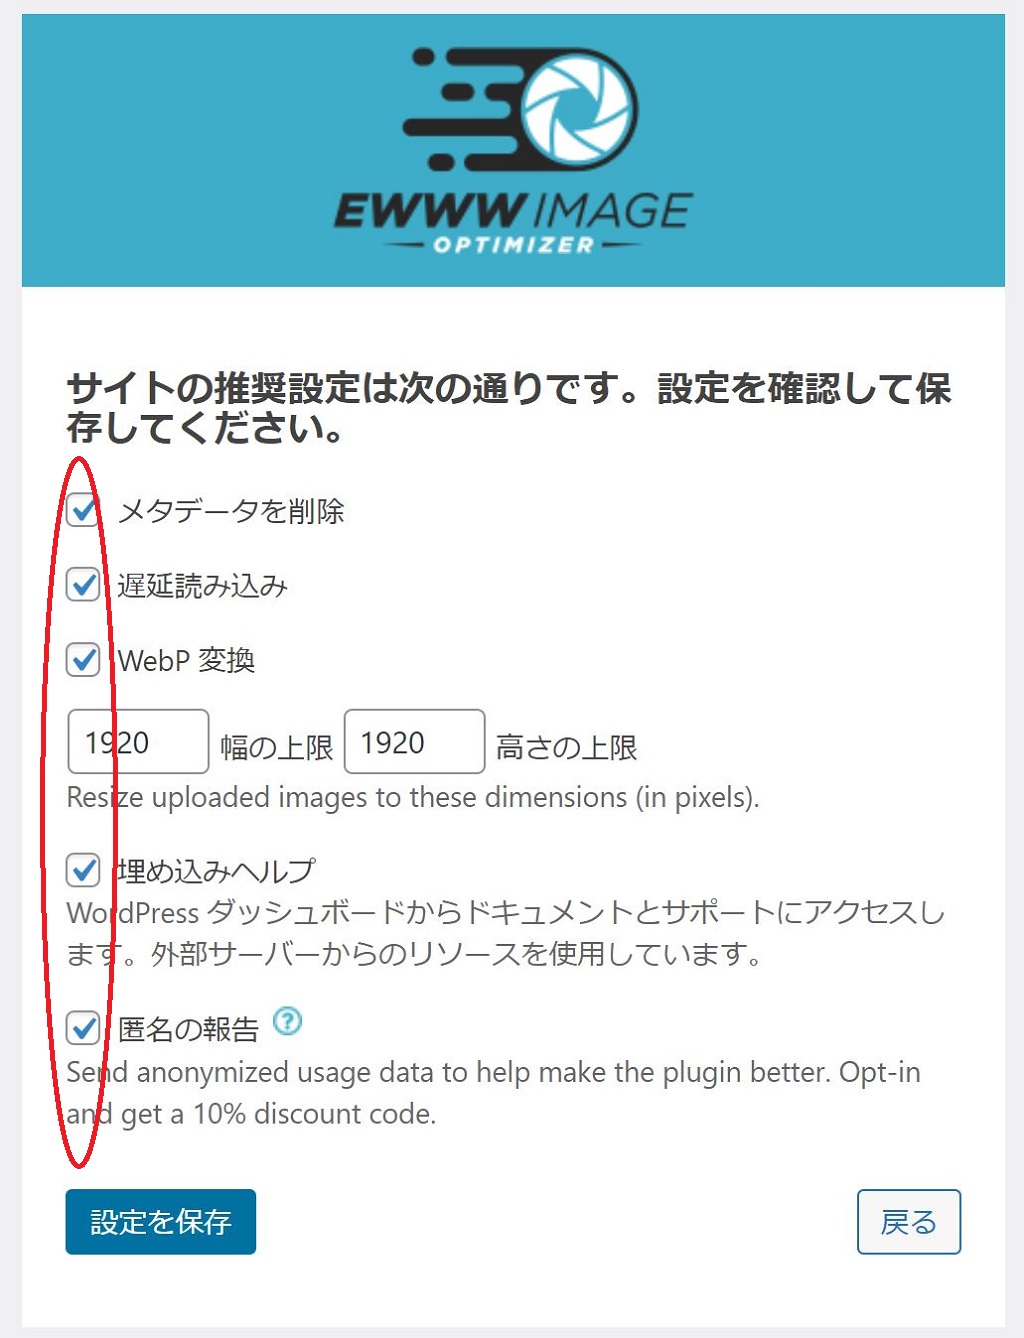 EWWW-Image-Optimizer-primary-setting